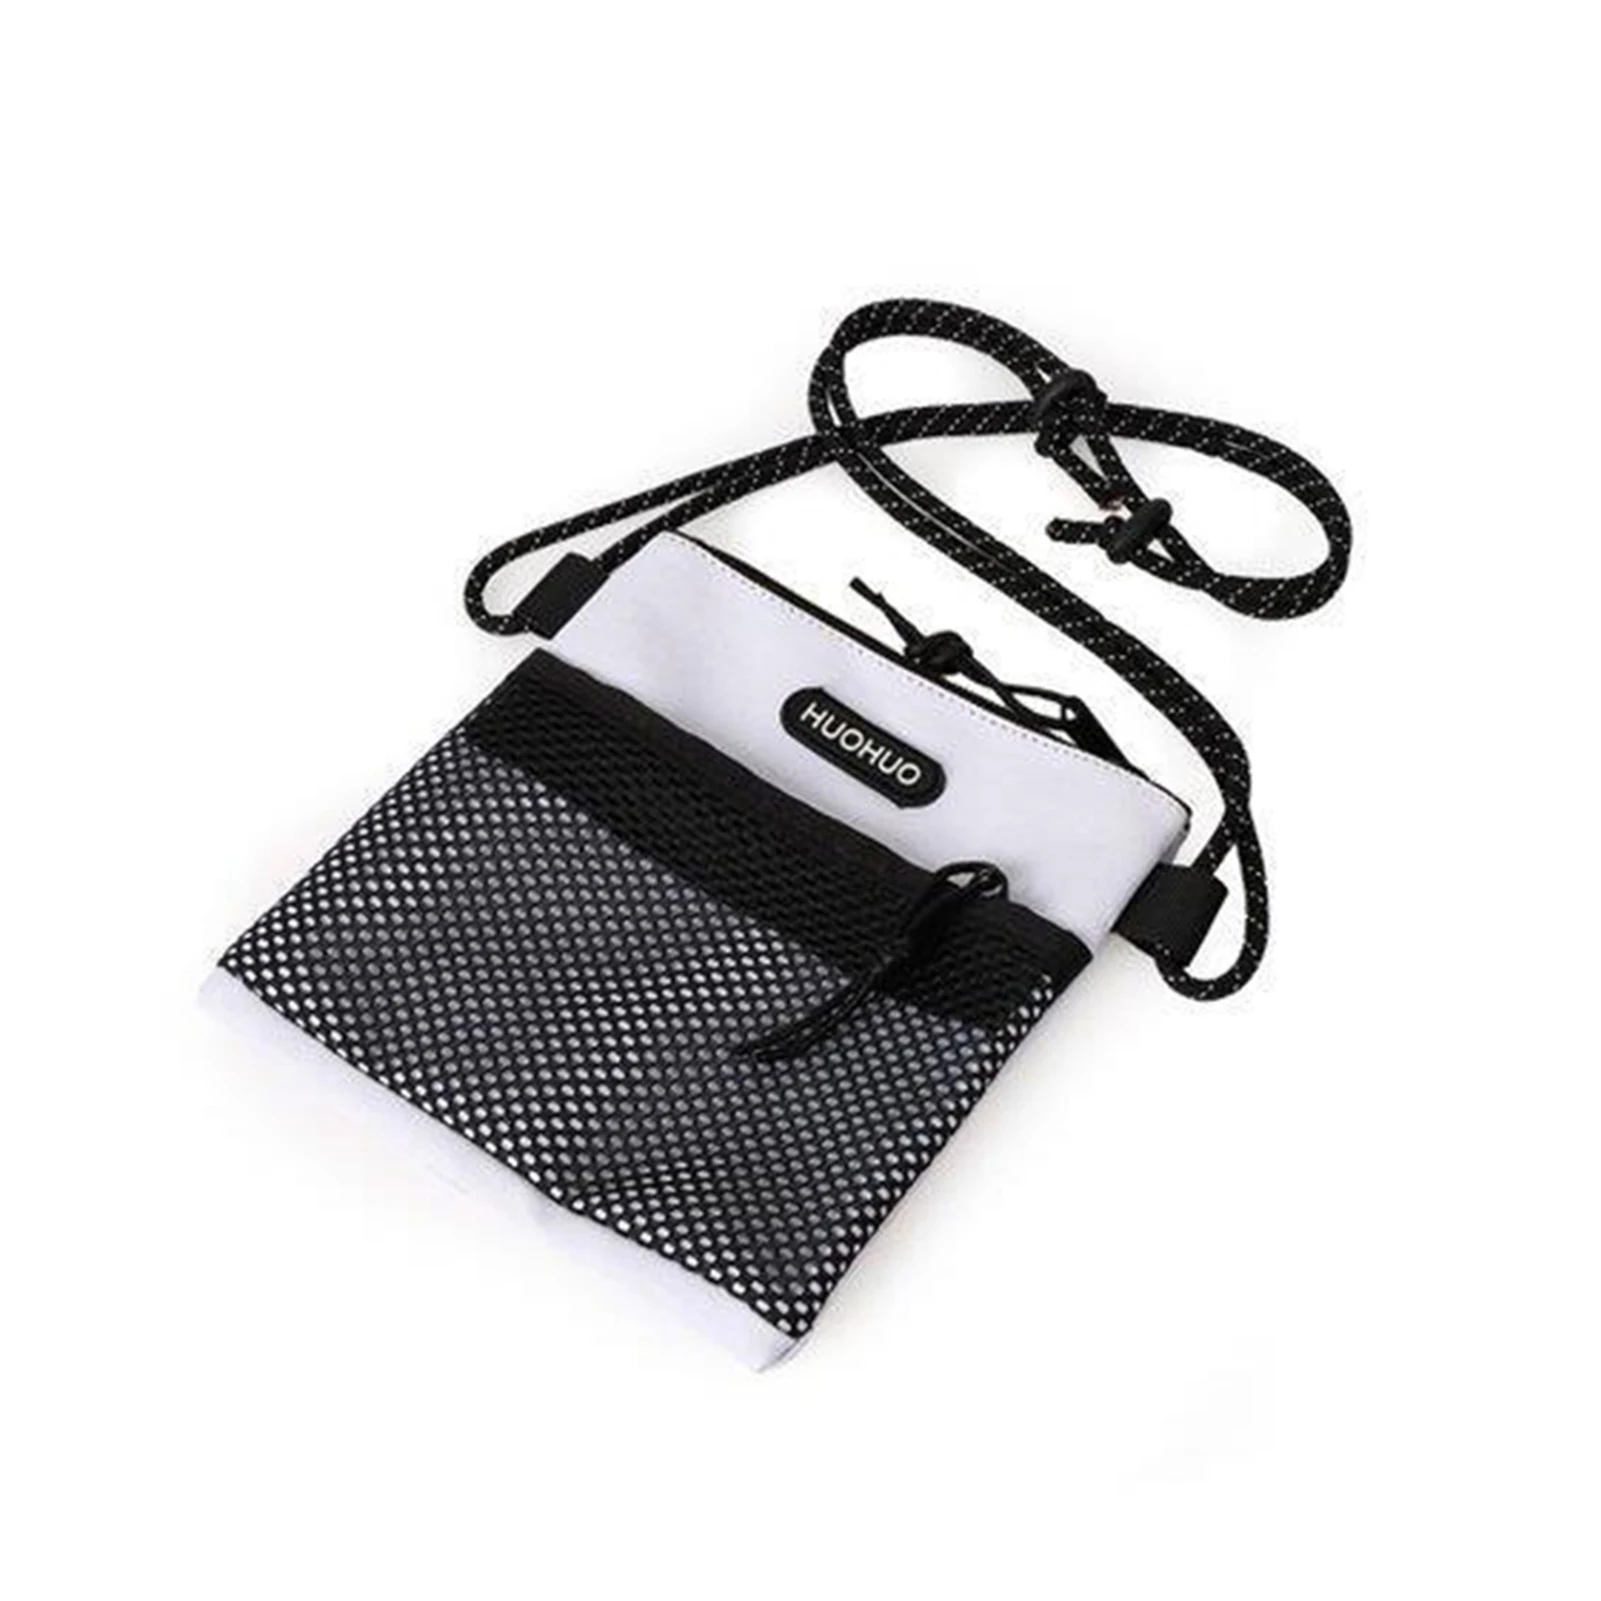 Mini ultraleichte Umhängetasche mit großer Kapazität und schwarzer Netz tasche für das Schul büro im Freien